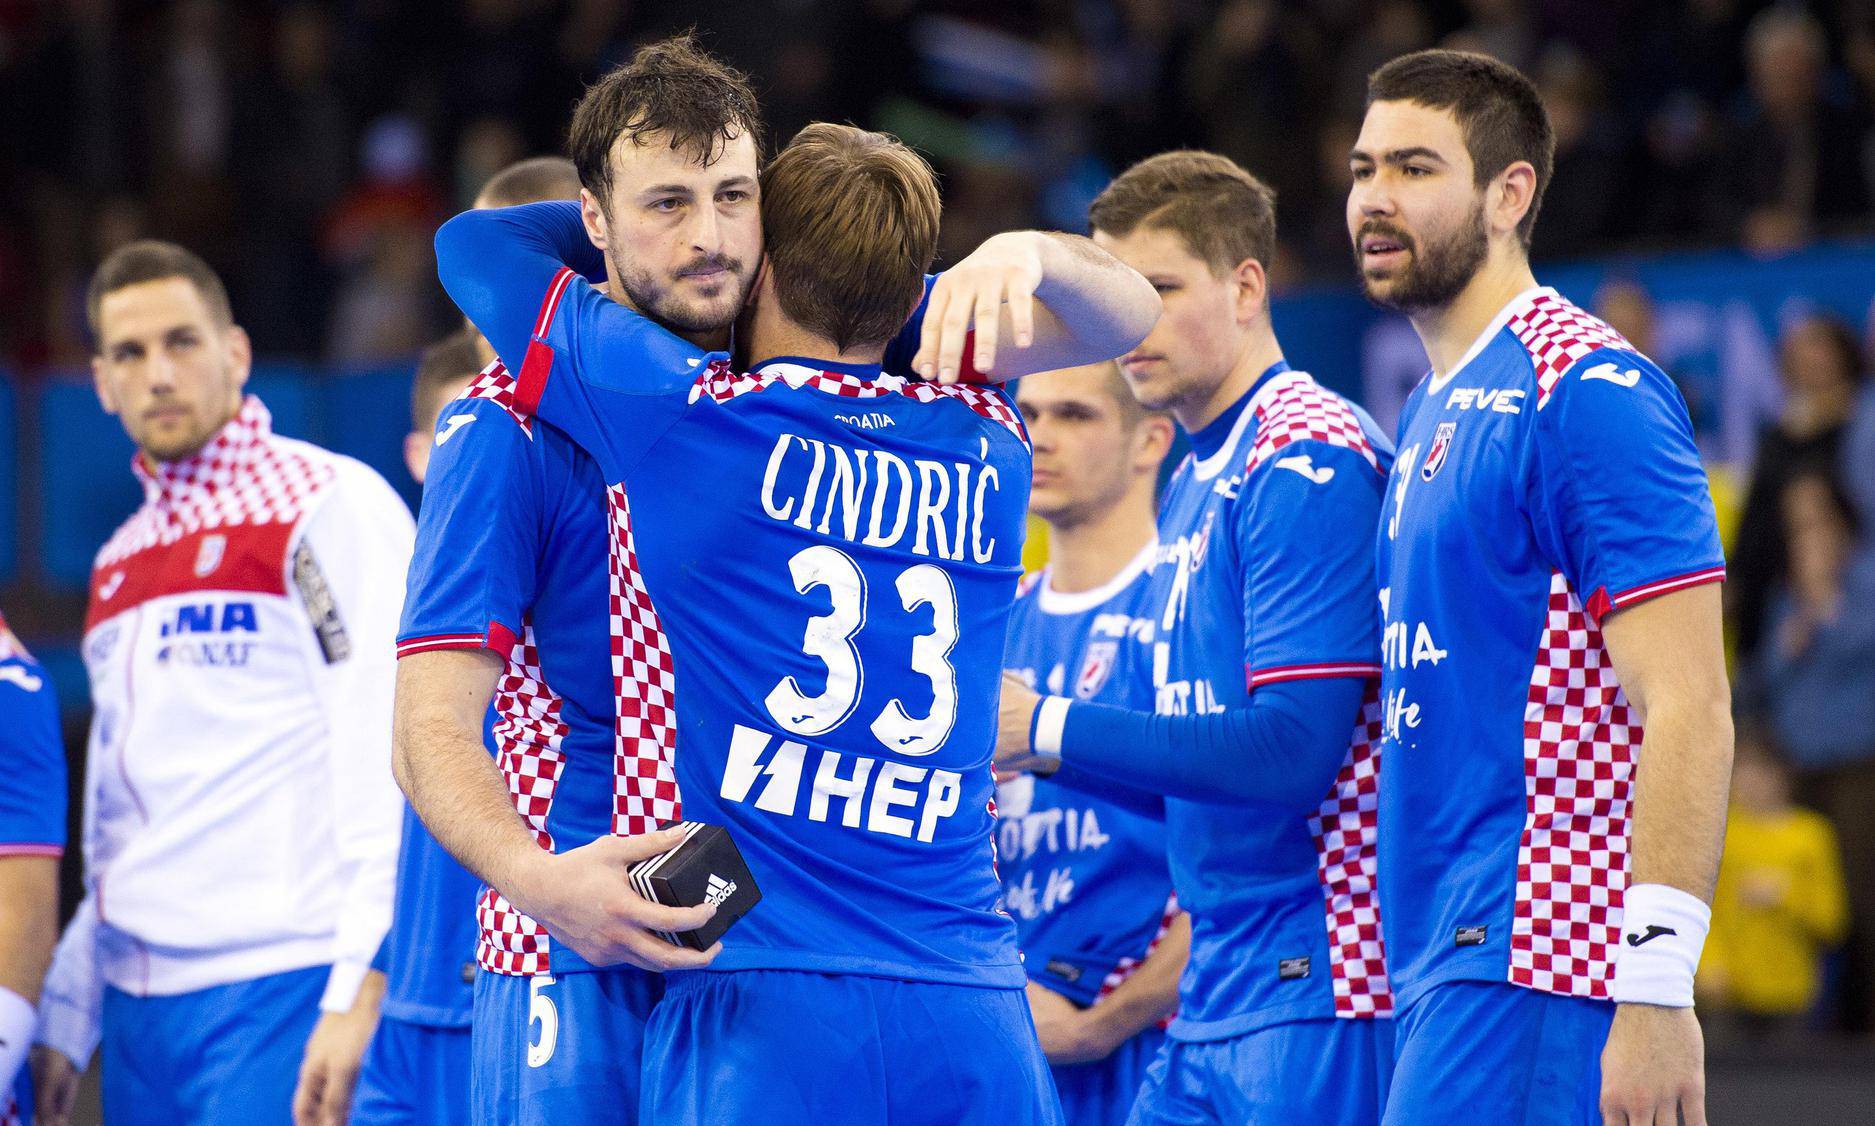 Rouen: U prvoj utakmici Svjetskog prvenstva Hrvatska pobijedila Saudijsku Arabiju